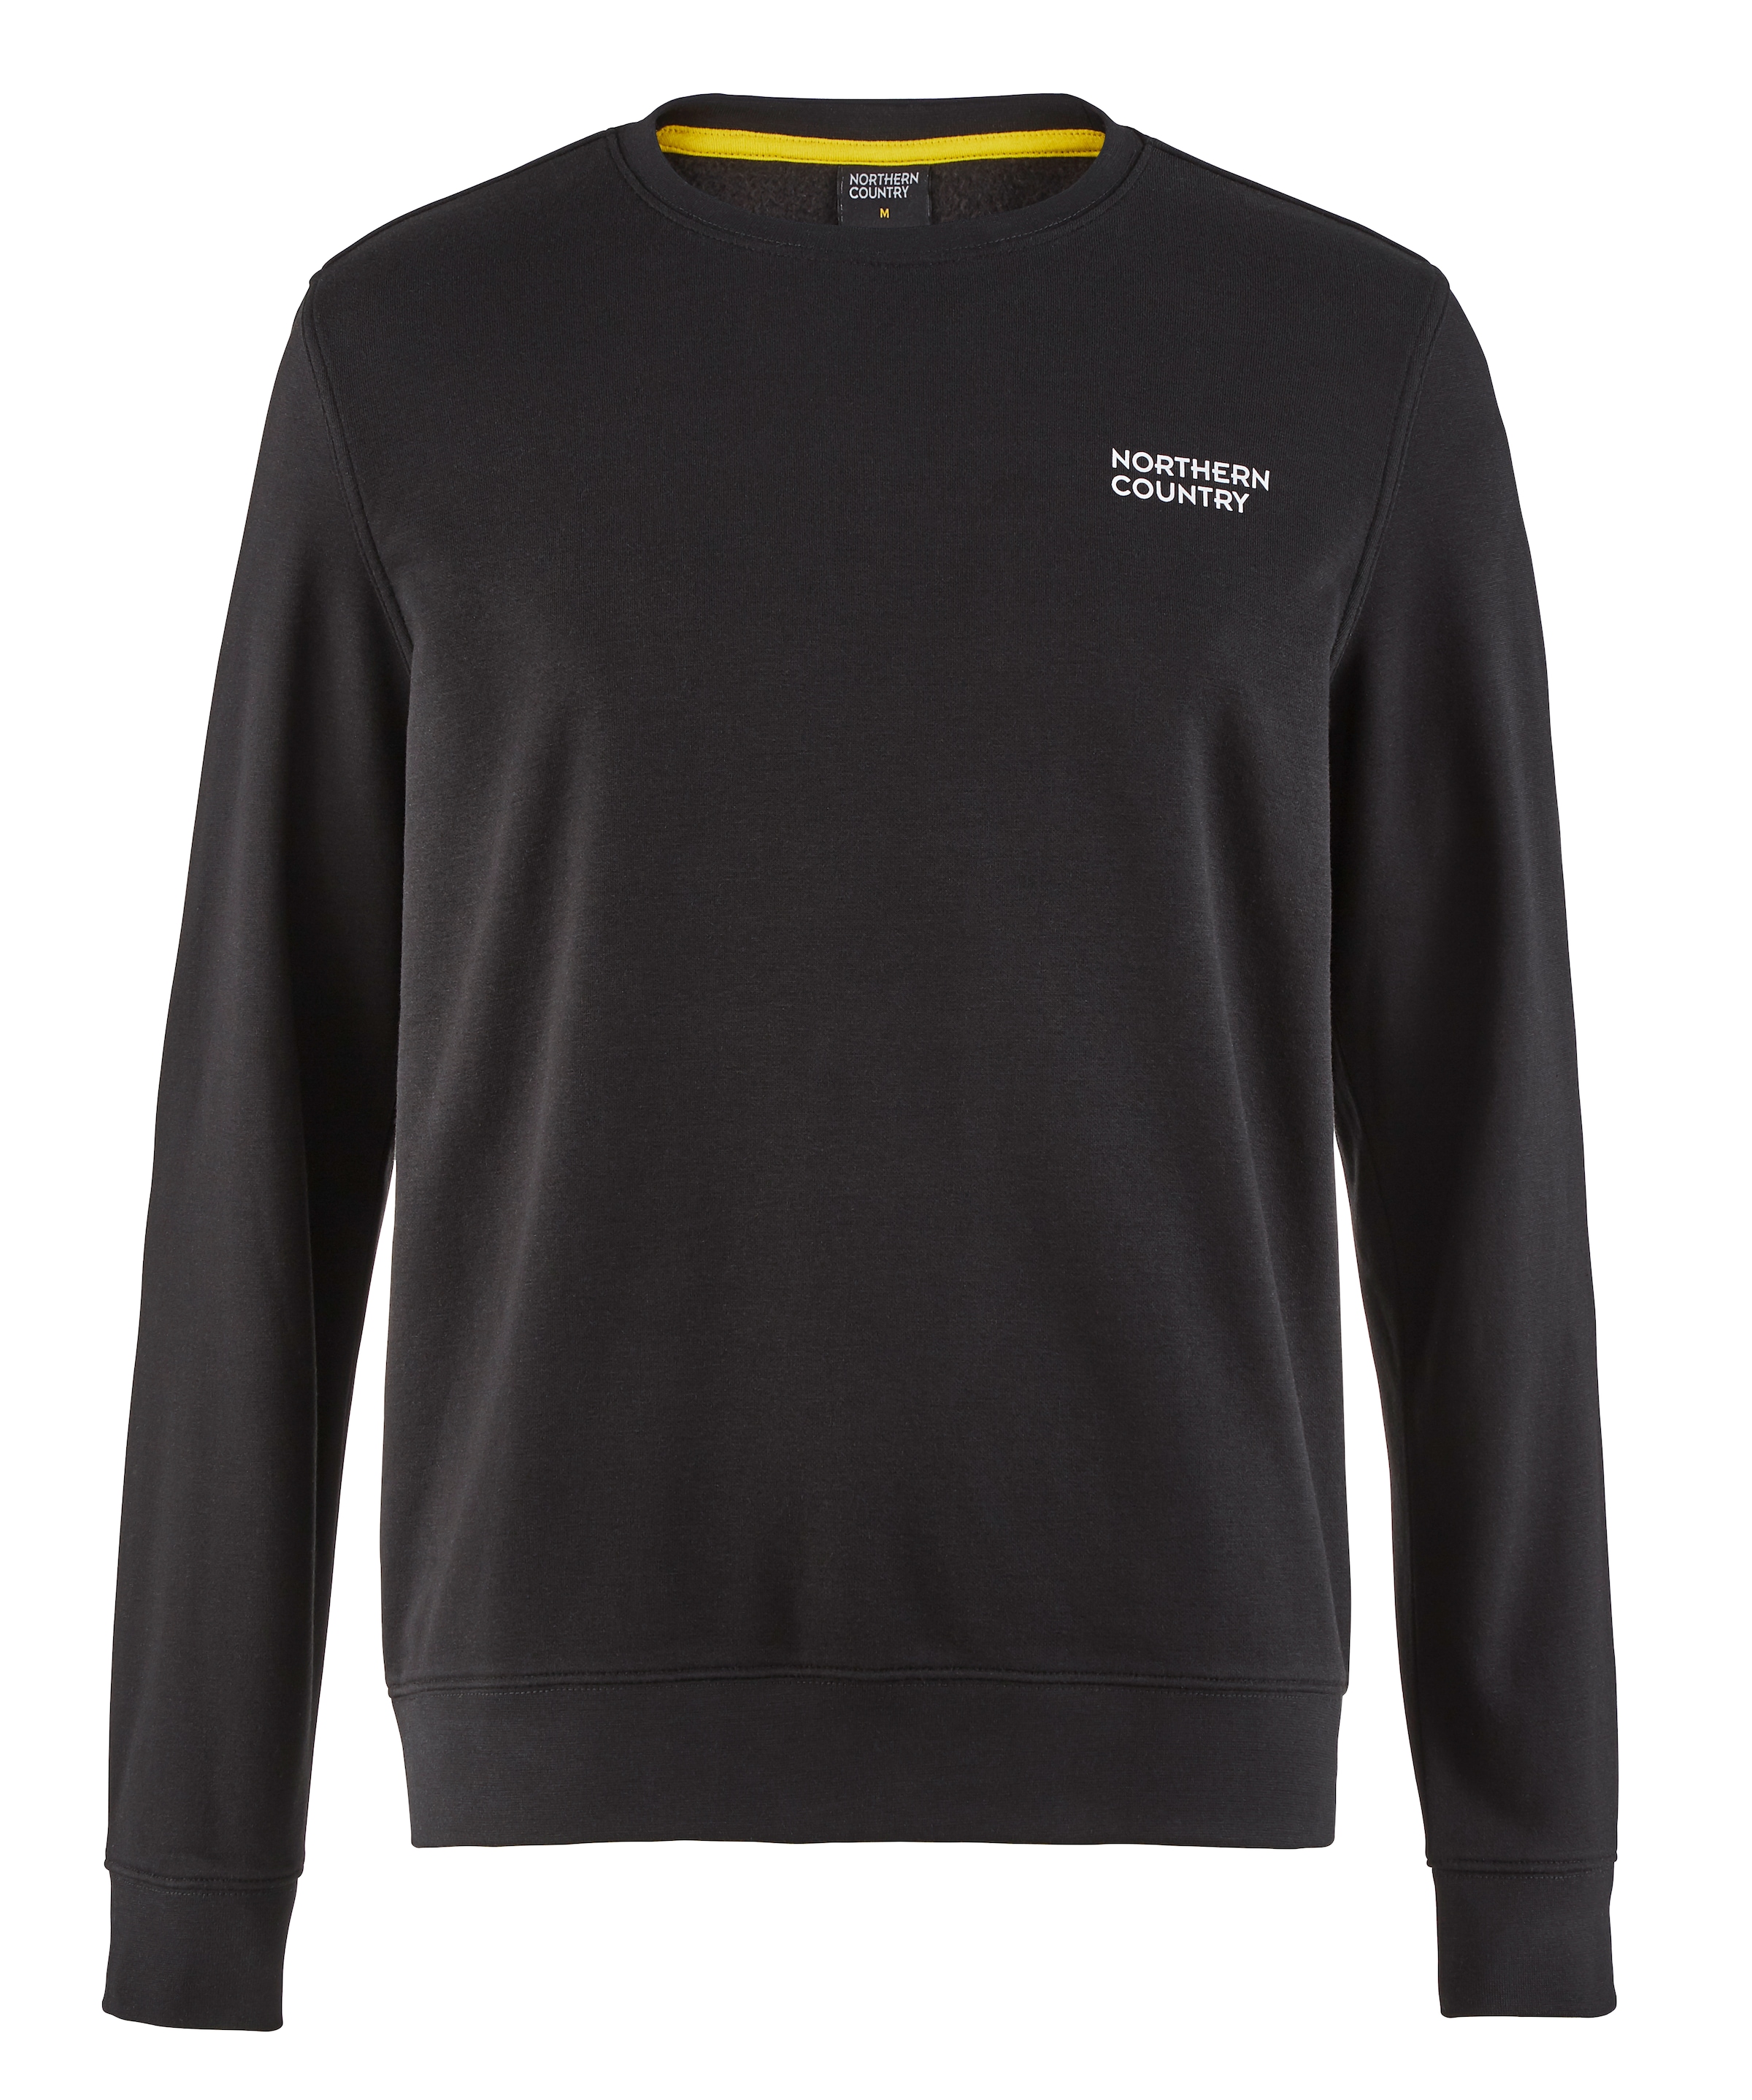 Northern Country Sweatshirt, zum Arbeiten, klassische Passform, leichte  Sweatware online shoppen bei OTTO